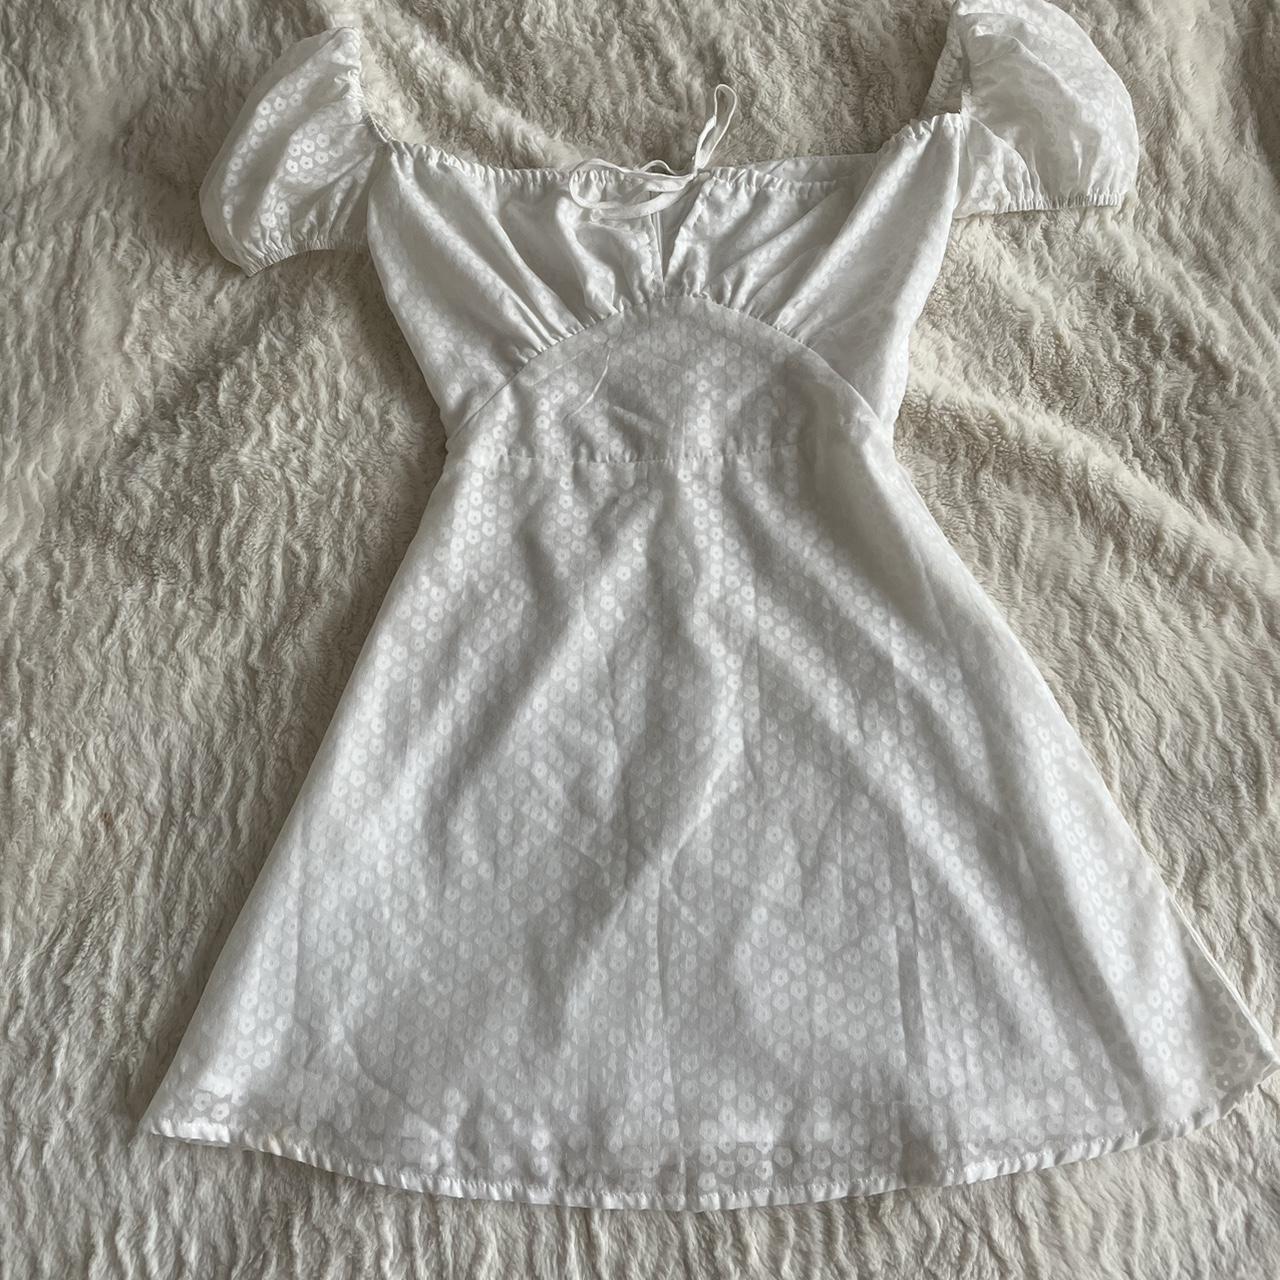 Sweetest baby doll dress 💌 Size 4, true to... - Depop